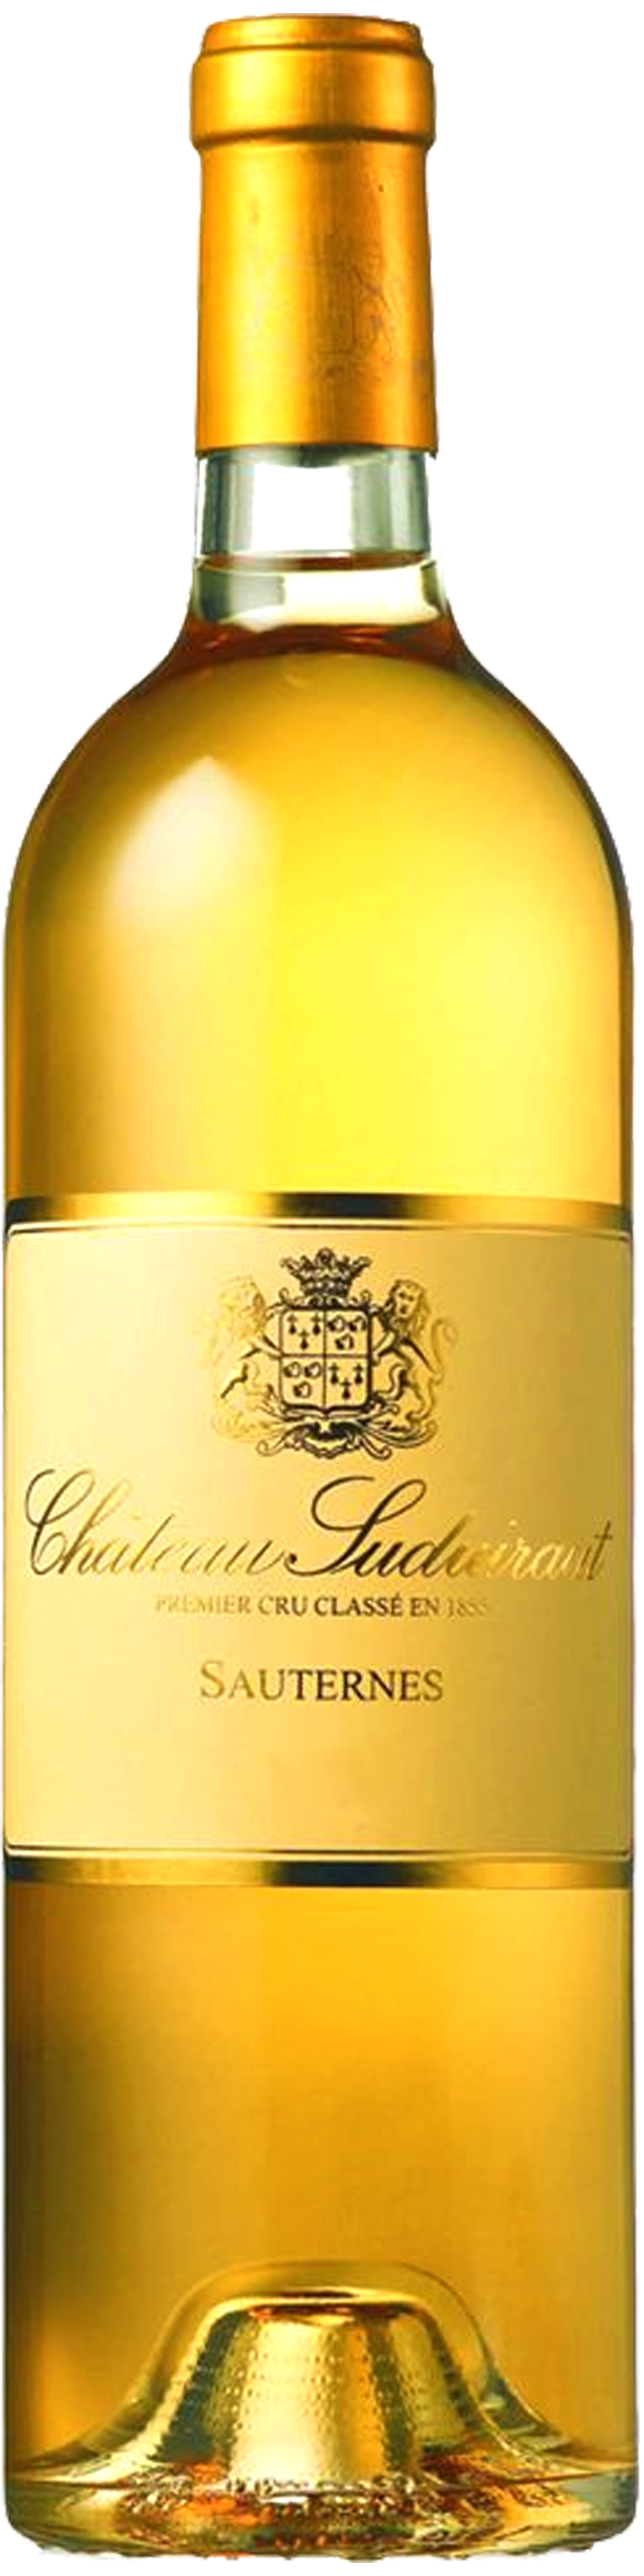 Bottle shot of 2009 Château Suduiraut, 1er Cru Sauternes